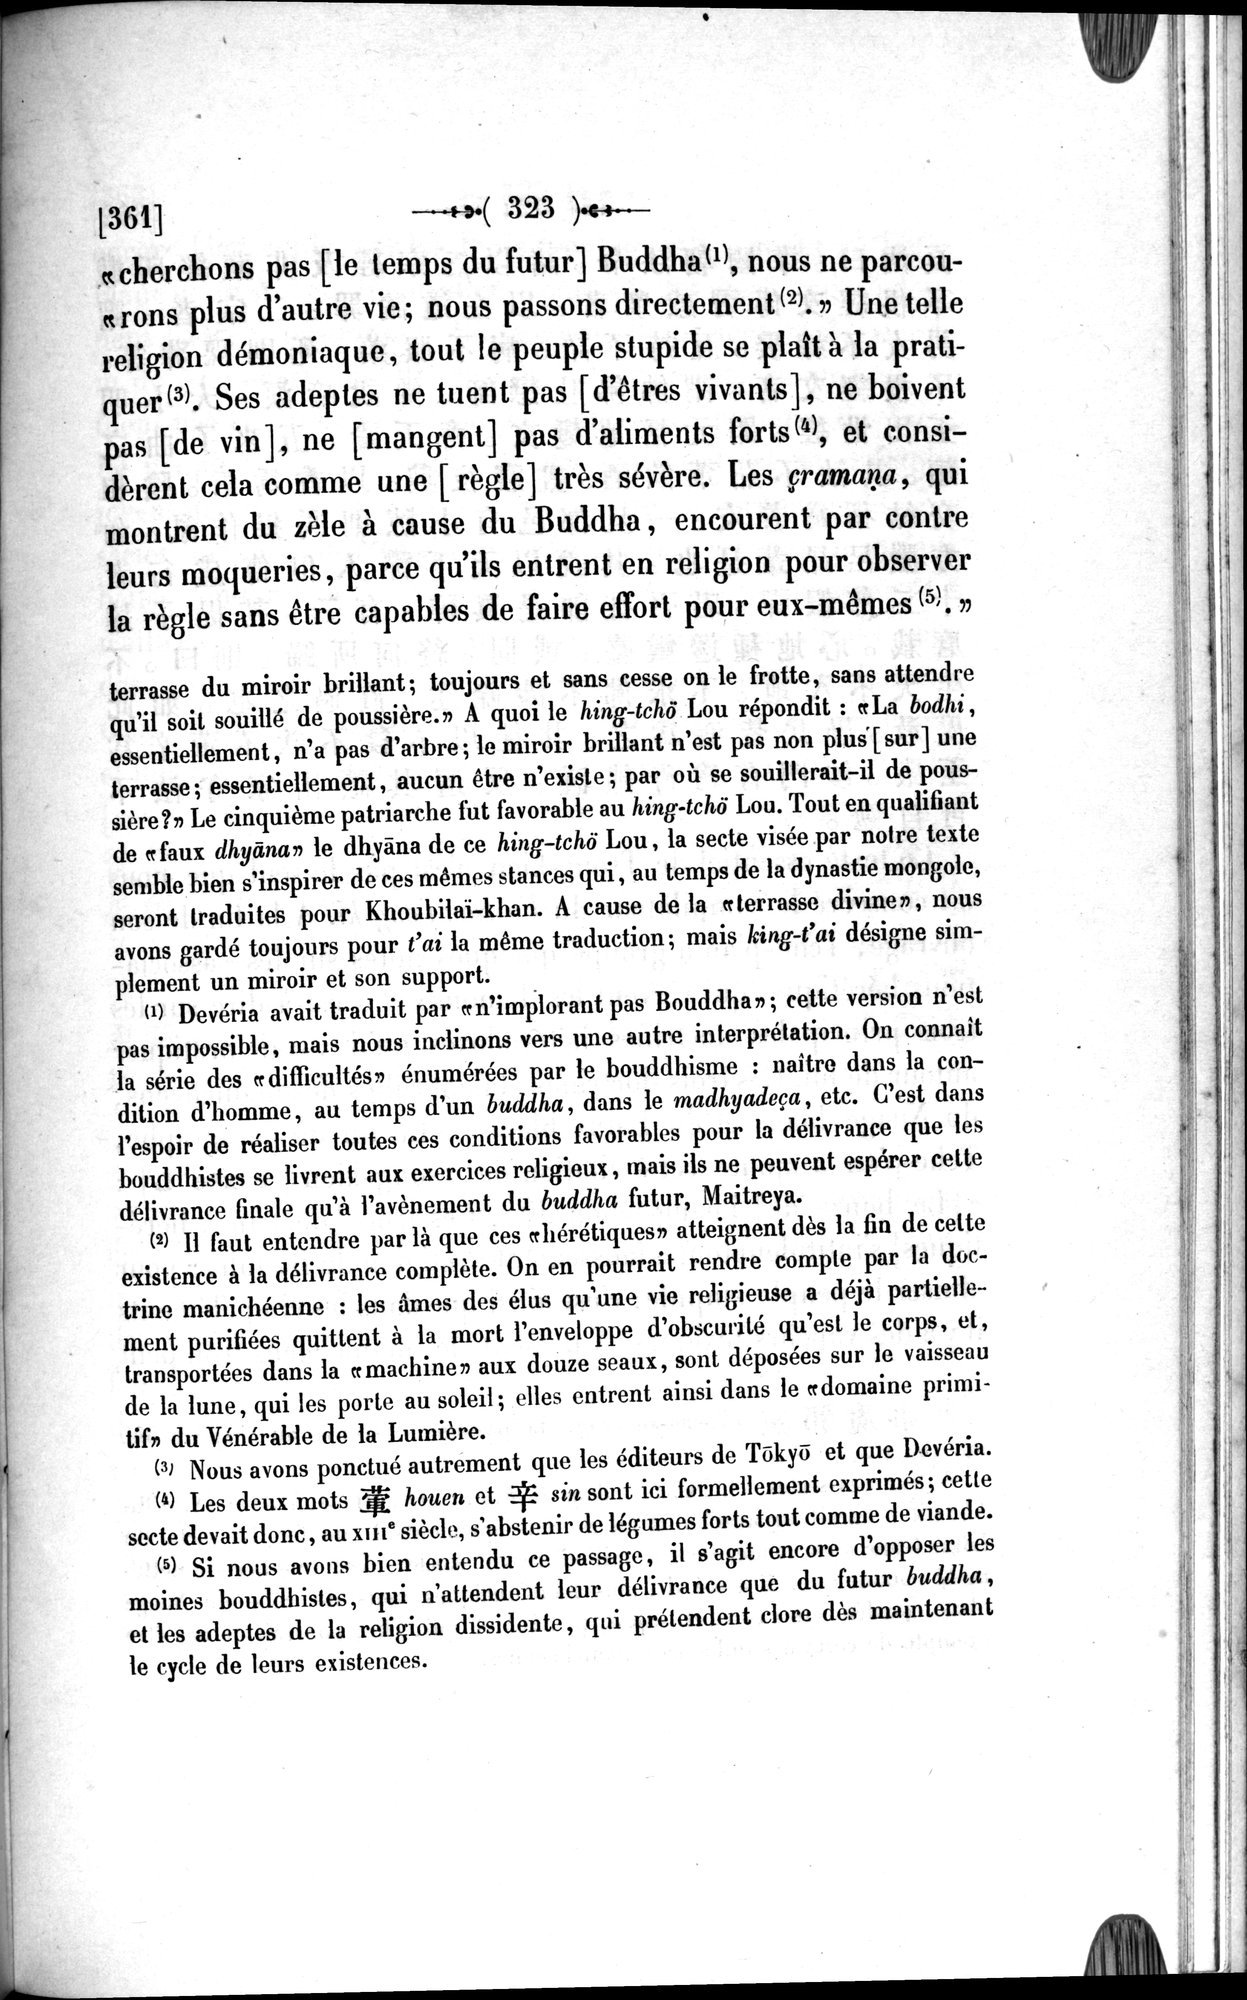 Un traité manichéen retrouvé en Chine : vol.1 / Page 333 (Grayscale High Resolution Image)